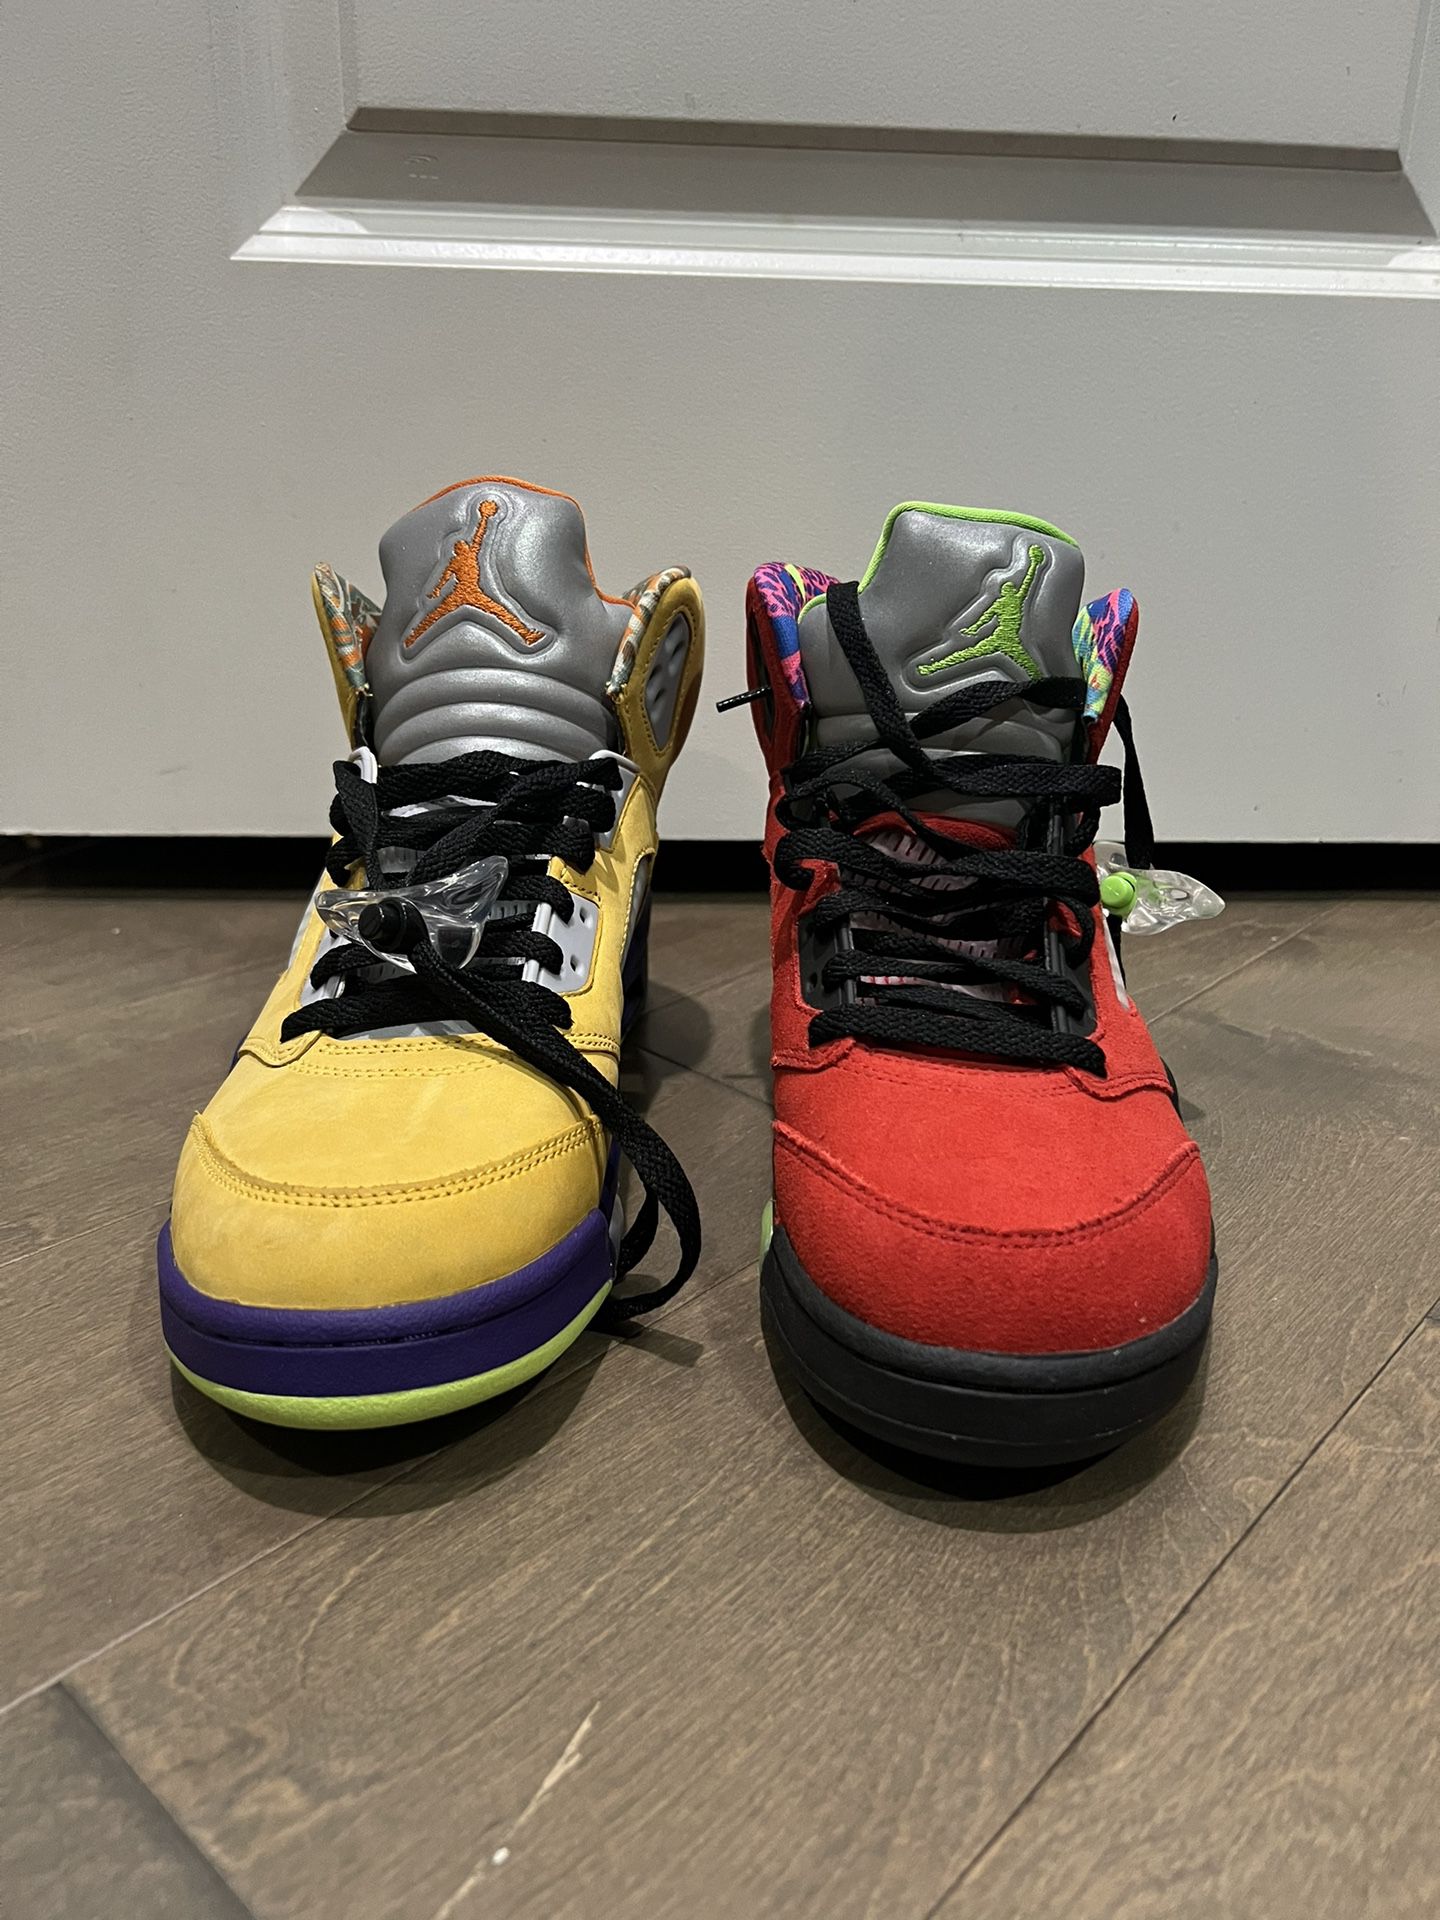 Jordan “What The” sneakers